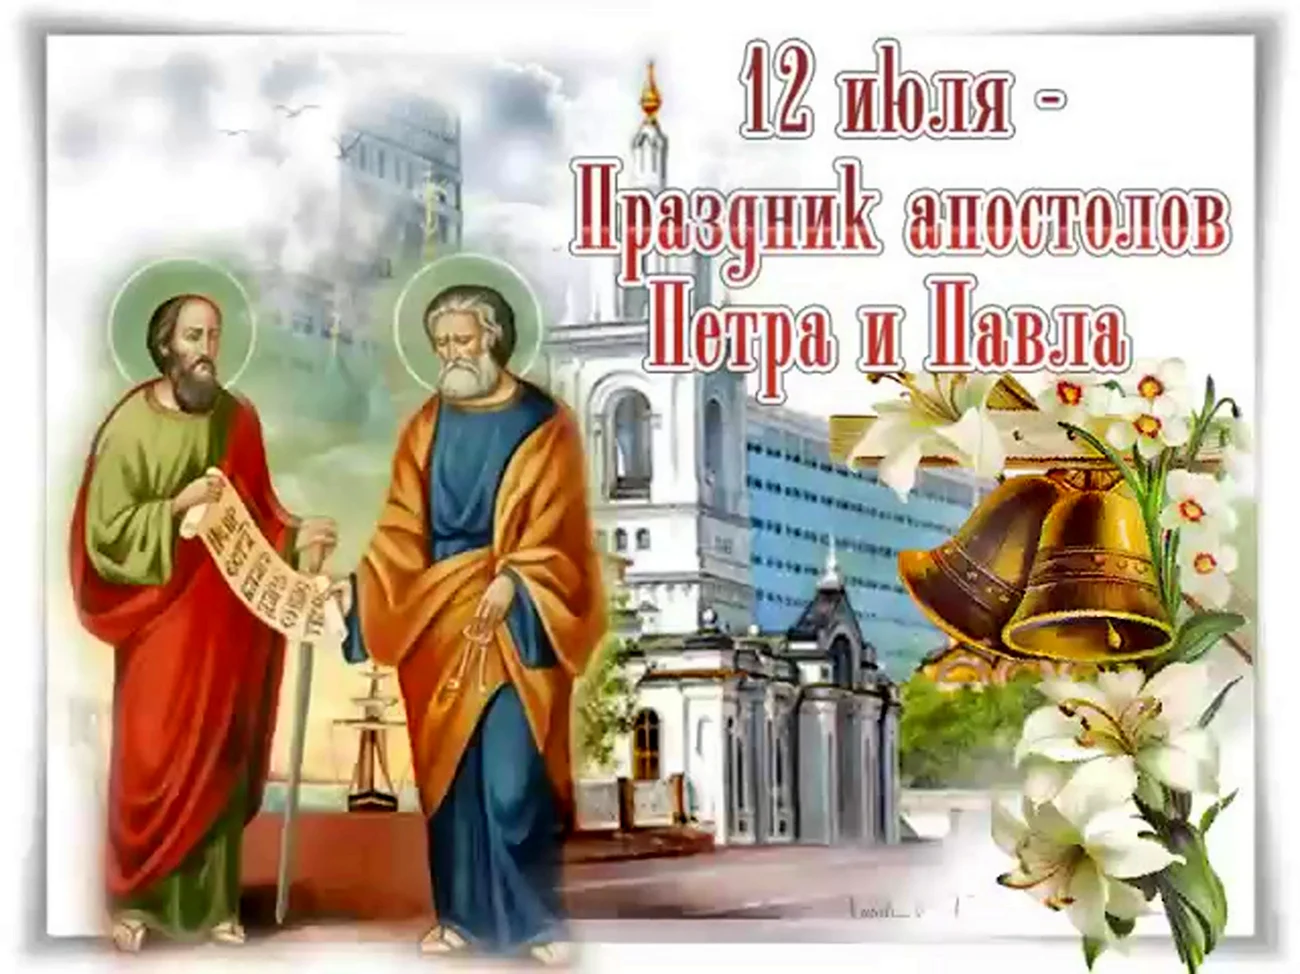 12 Июля Петра и Павла. Поздравление